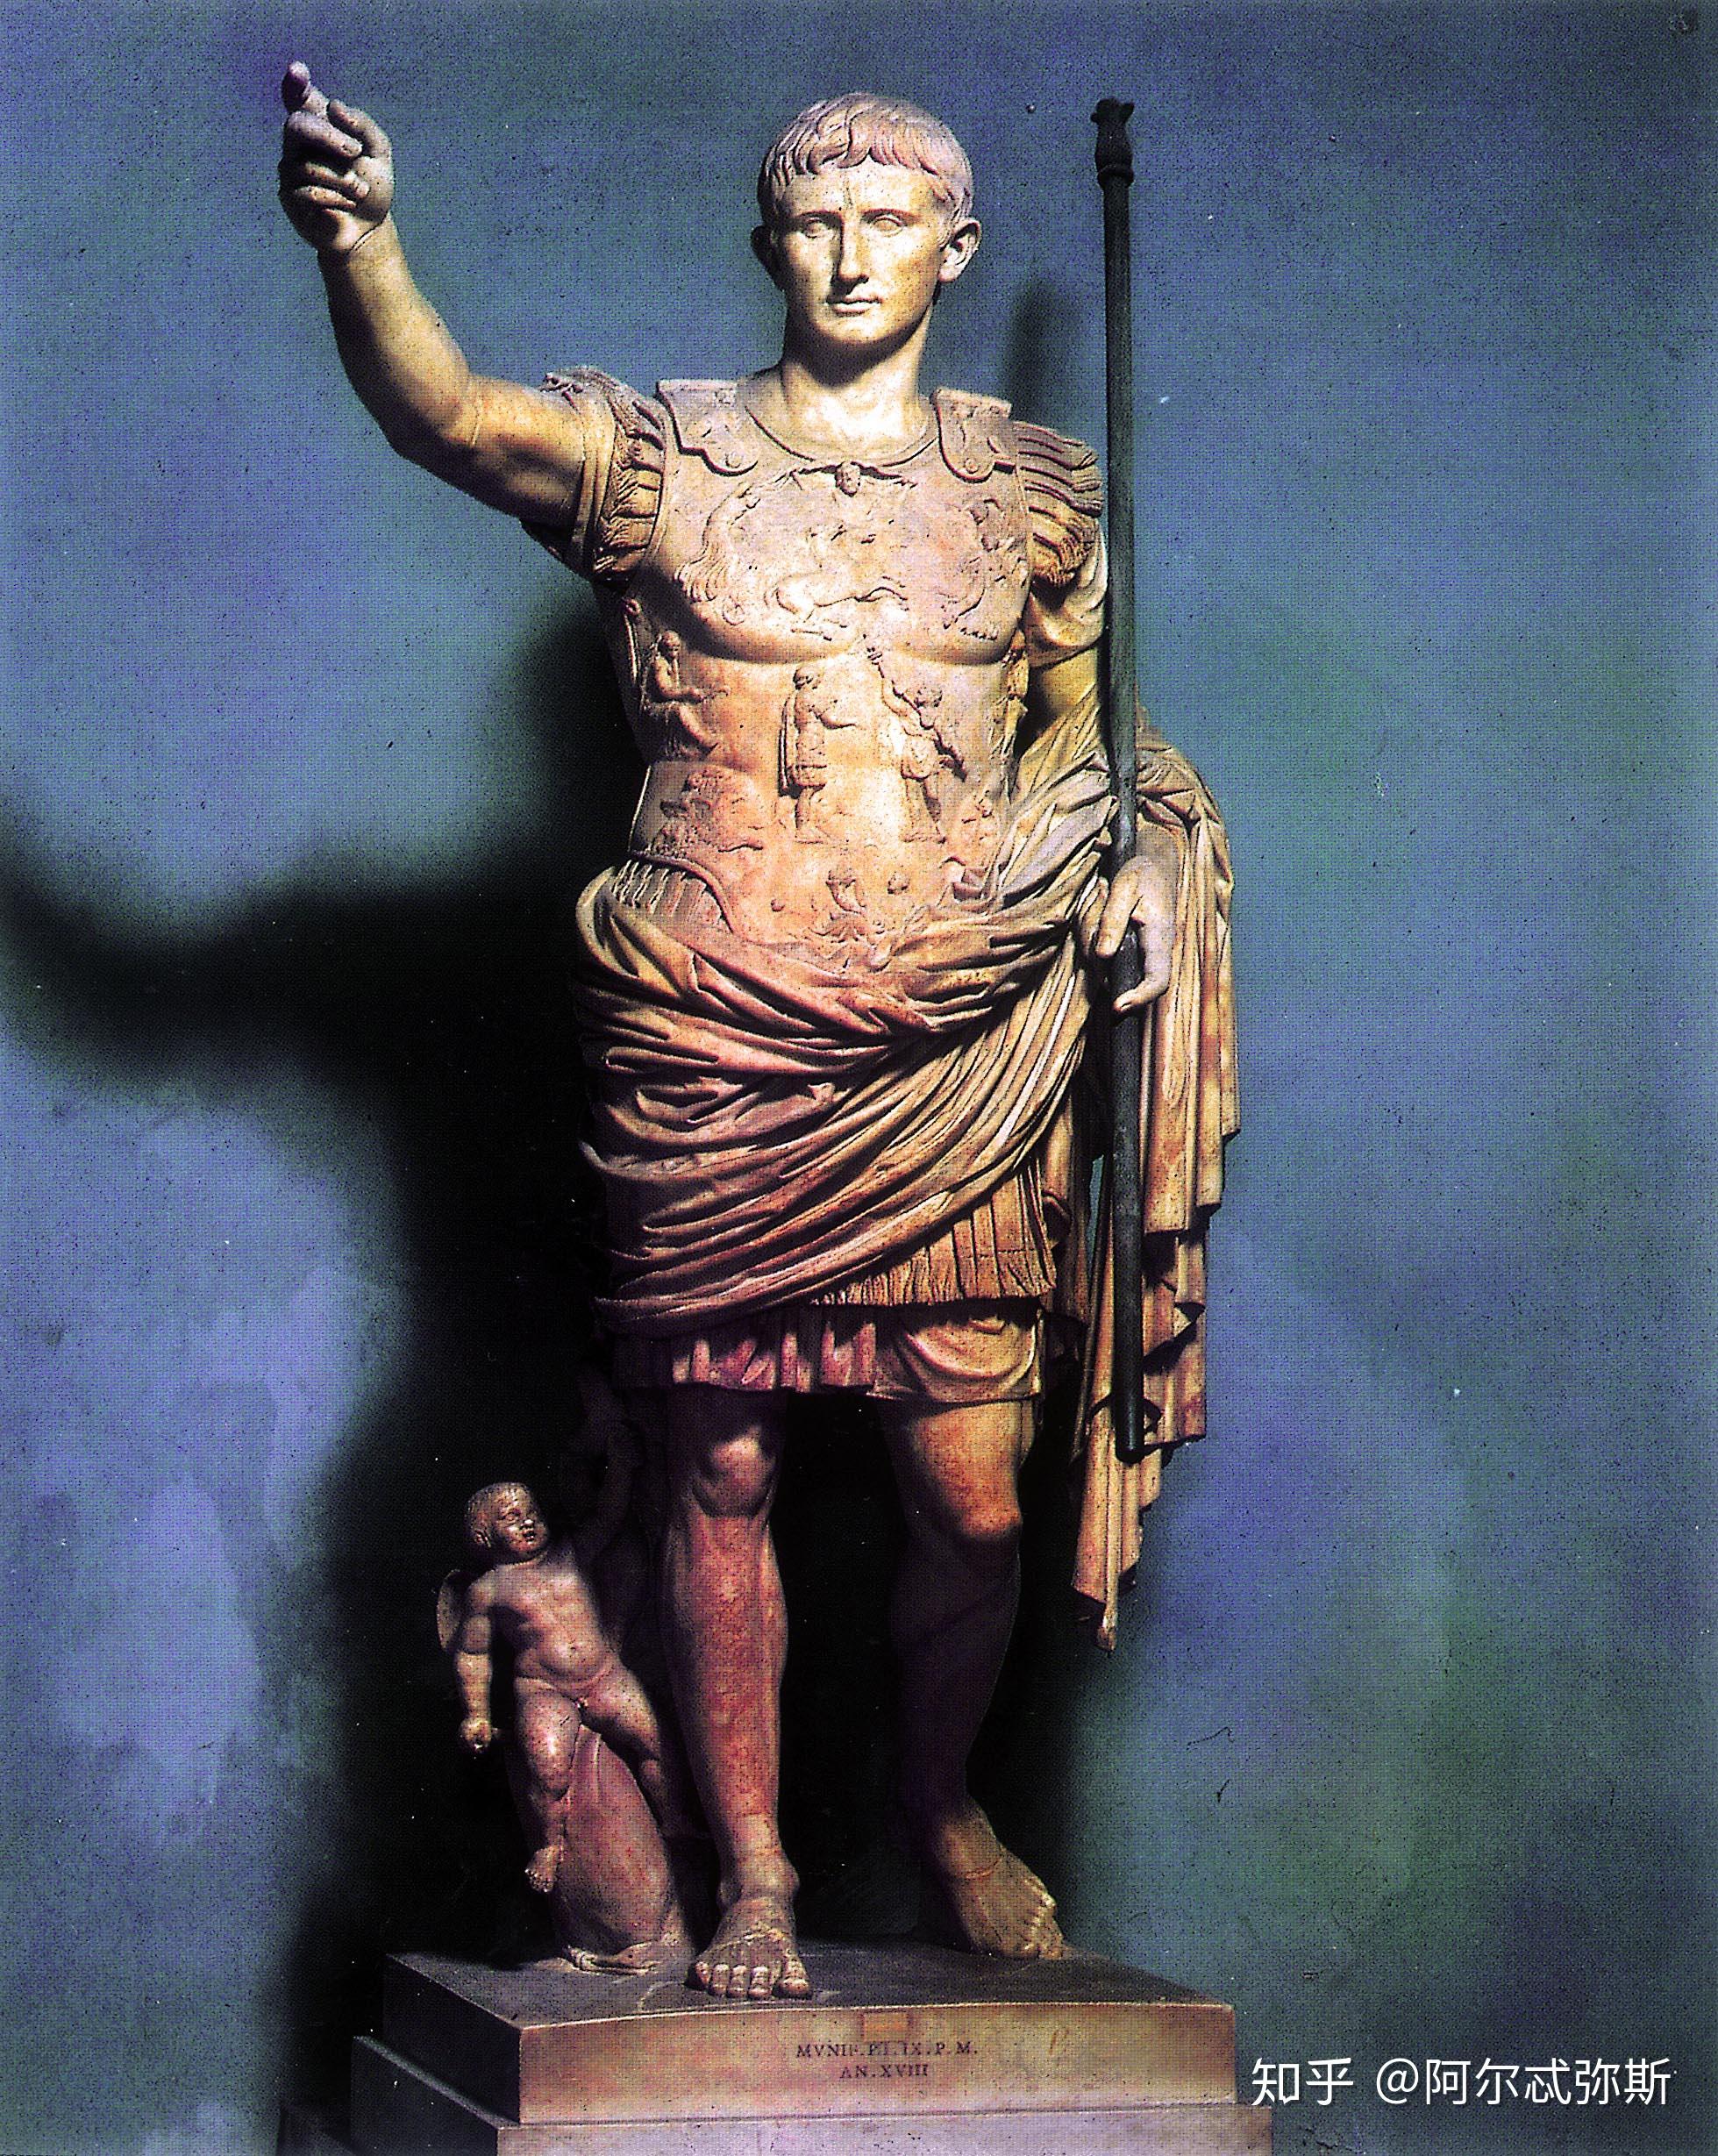 古罗马古希腊文艺复兴时的雕塑风格有没有什么不同